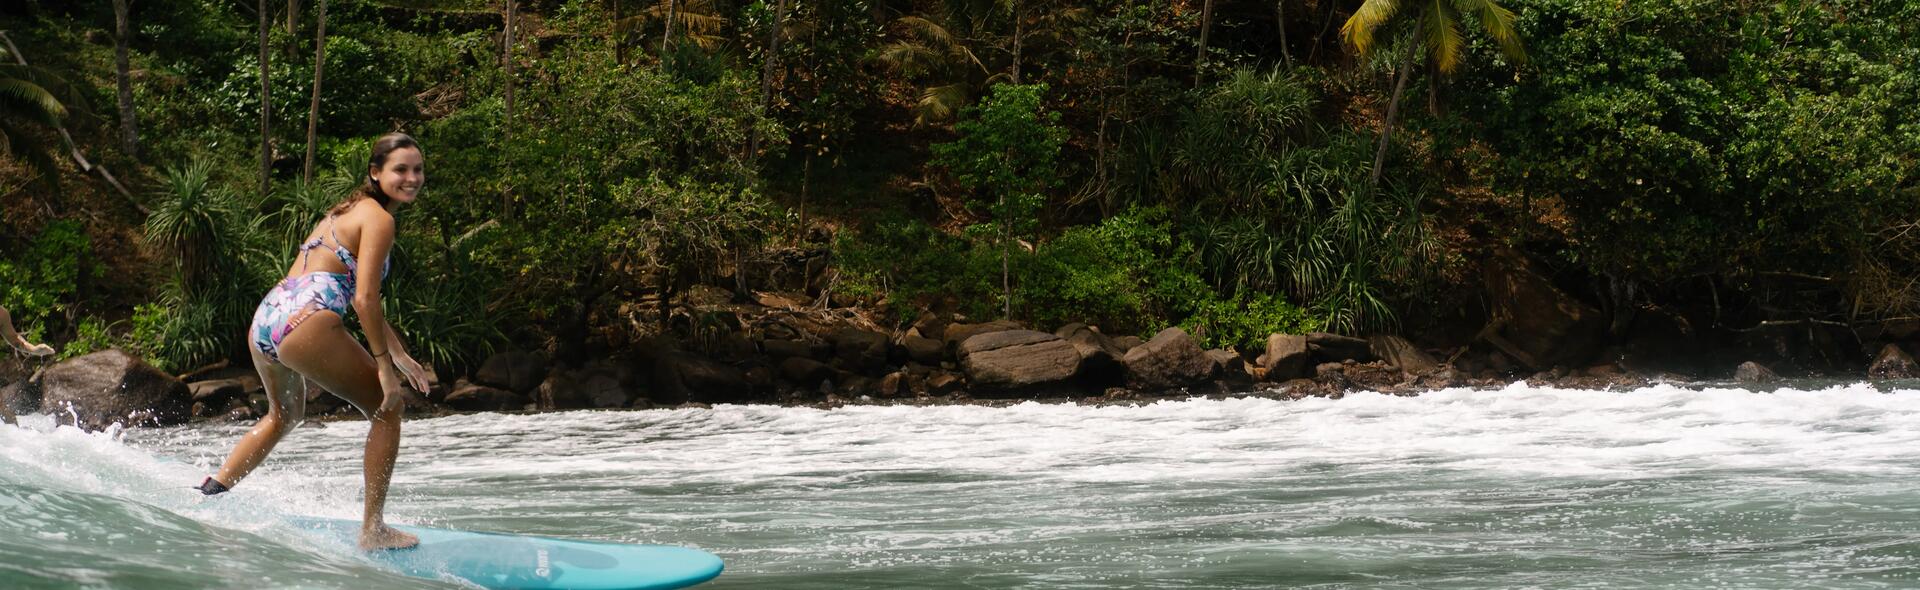 Y tú ¿sabes dónde puedes practicar surf en Colombia? 